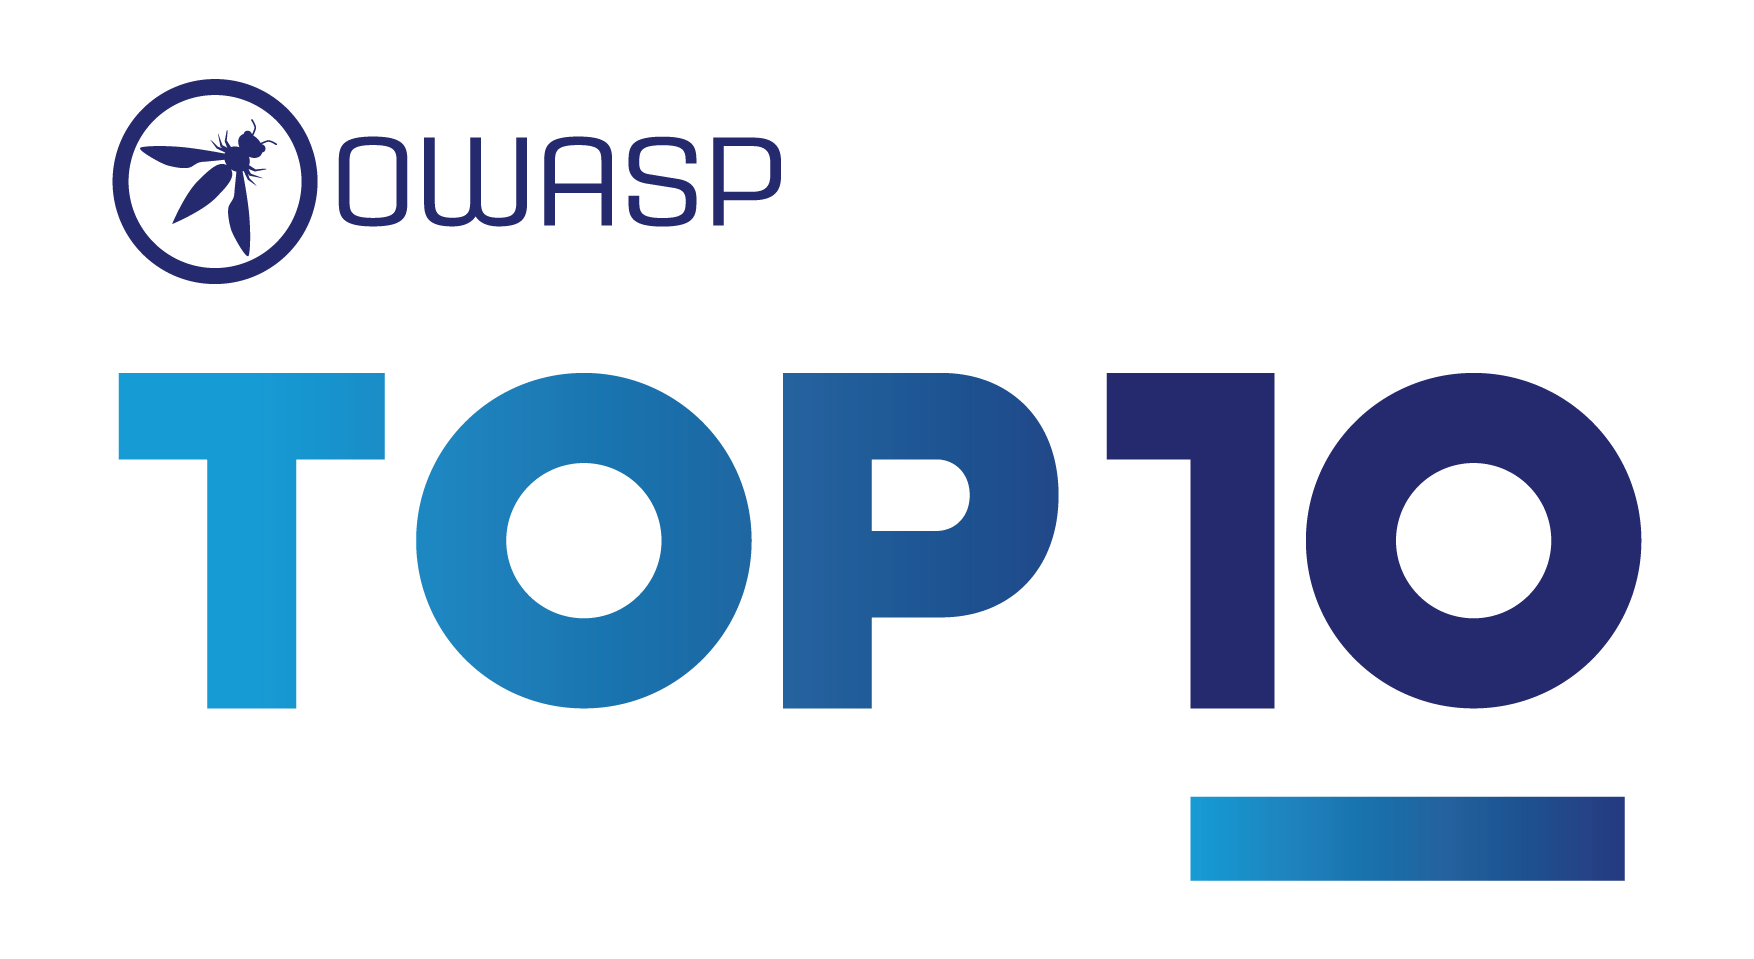 OWASP TOP 10